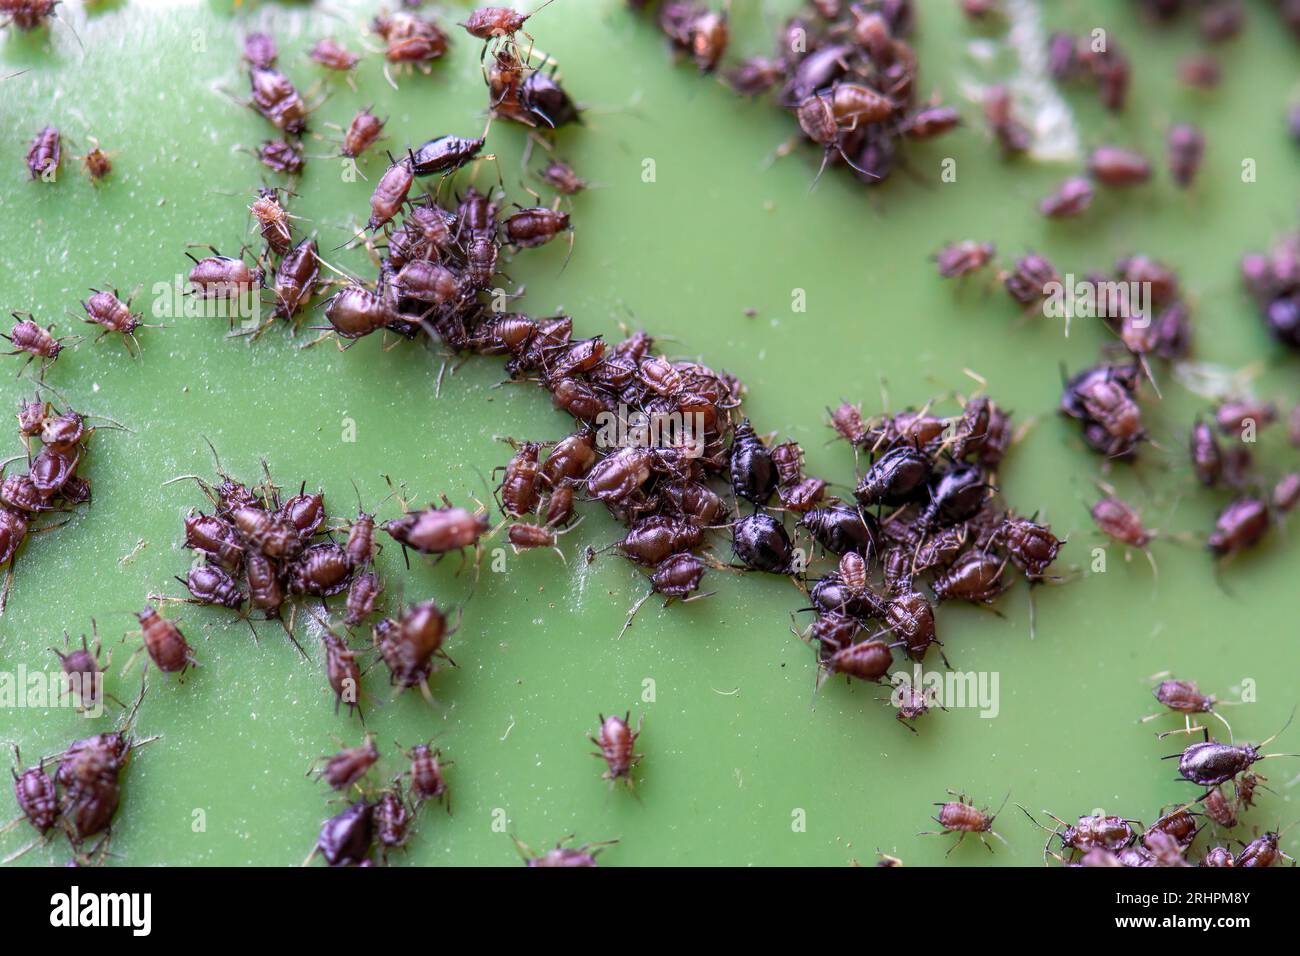 Gros plan d'une infestation de pucerons, également connue sous le nom de ou Black Fly sur une poubelle de déchets verts de jardin Banque D'Images